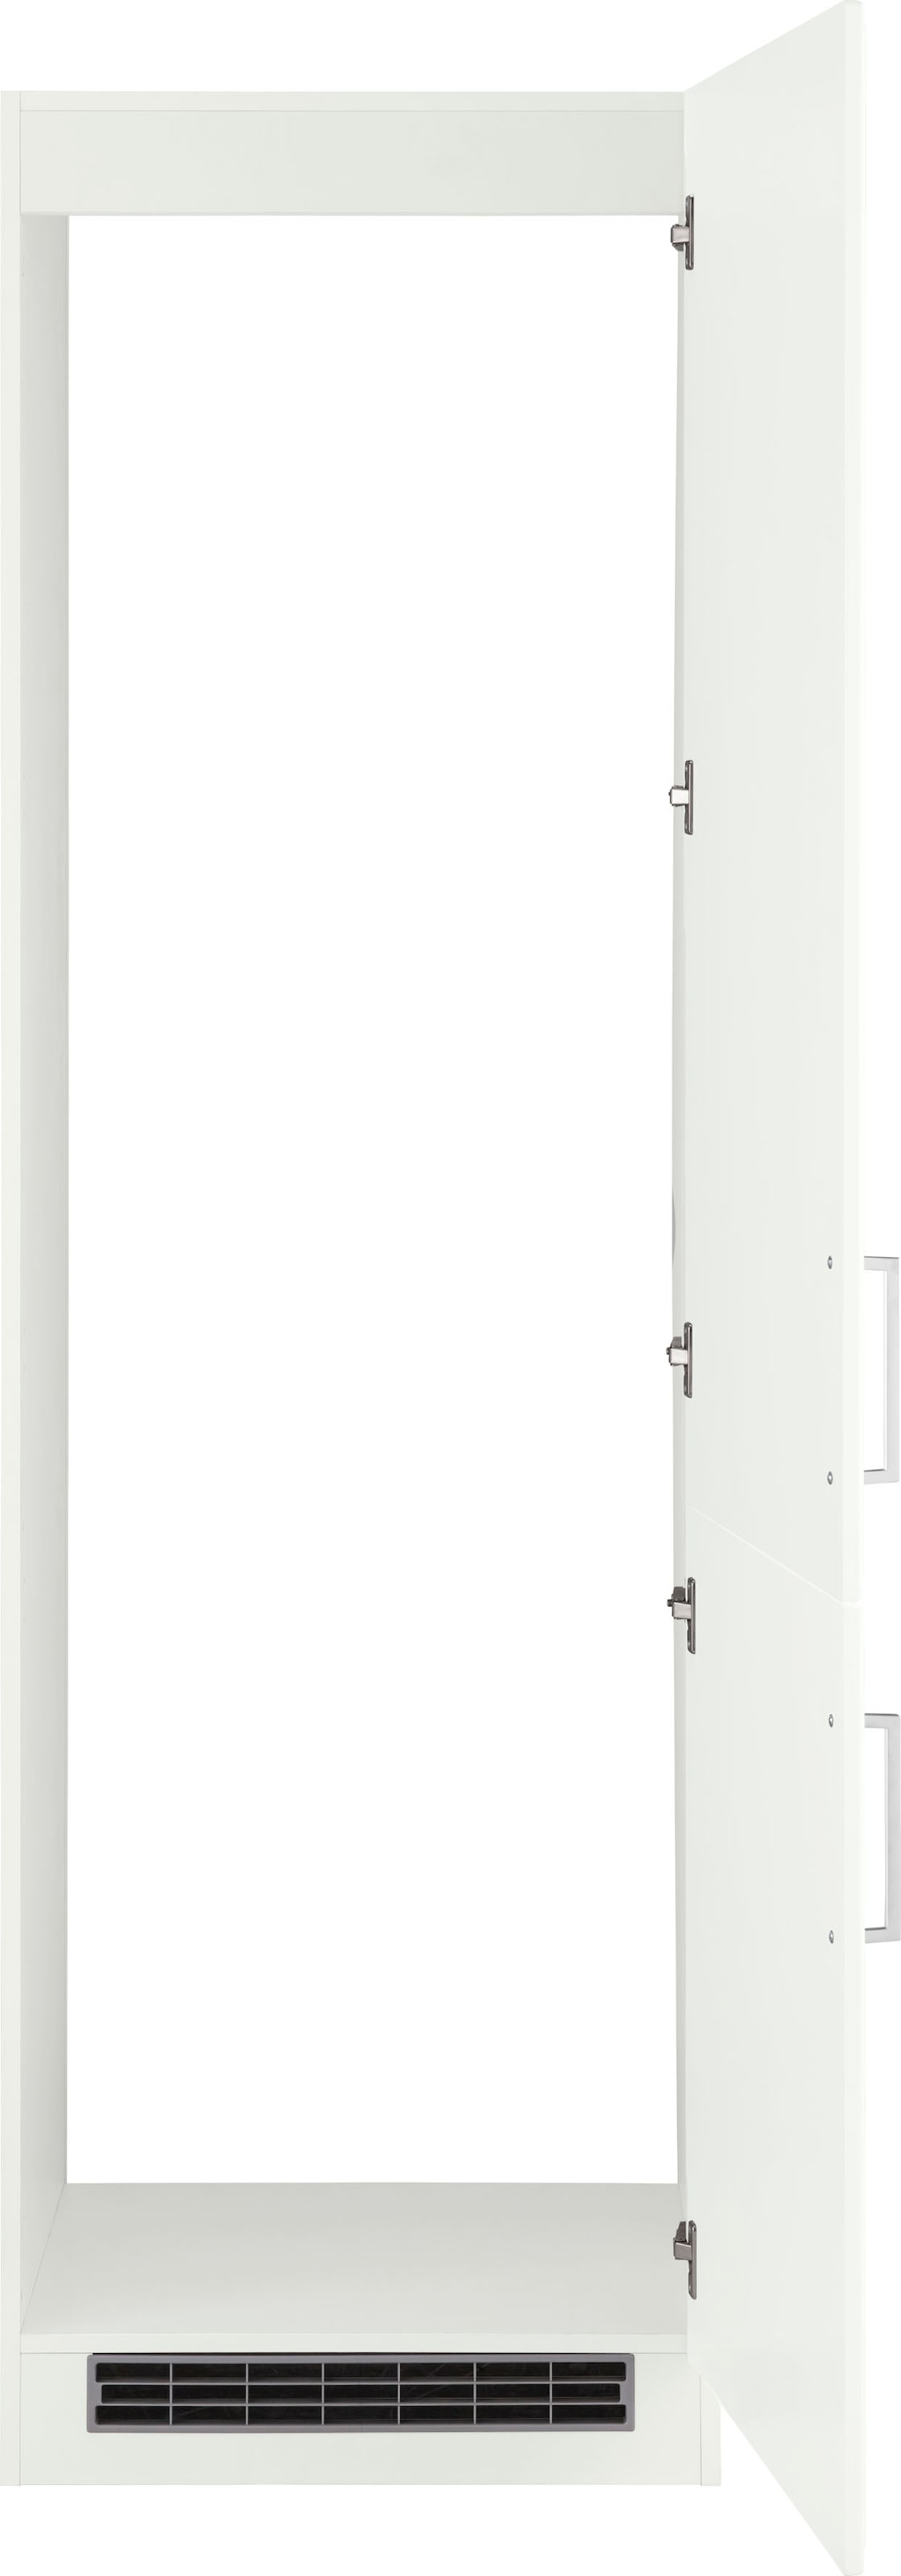 HELD MÖBEL Kühlumbauschrank »Stockholm«, 60 cm breit, hochwertige MDF-Fronten mit Fräsung